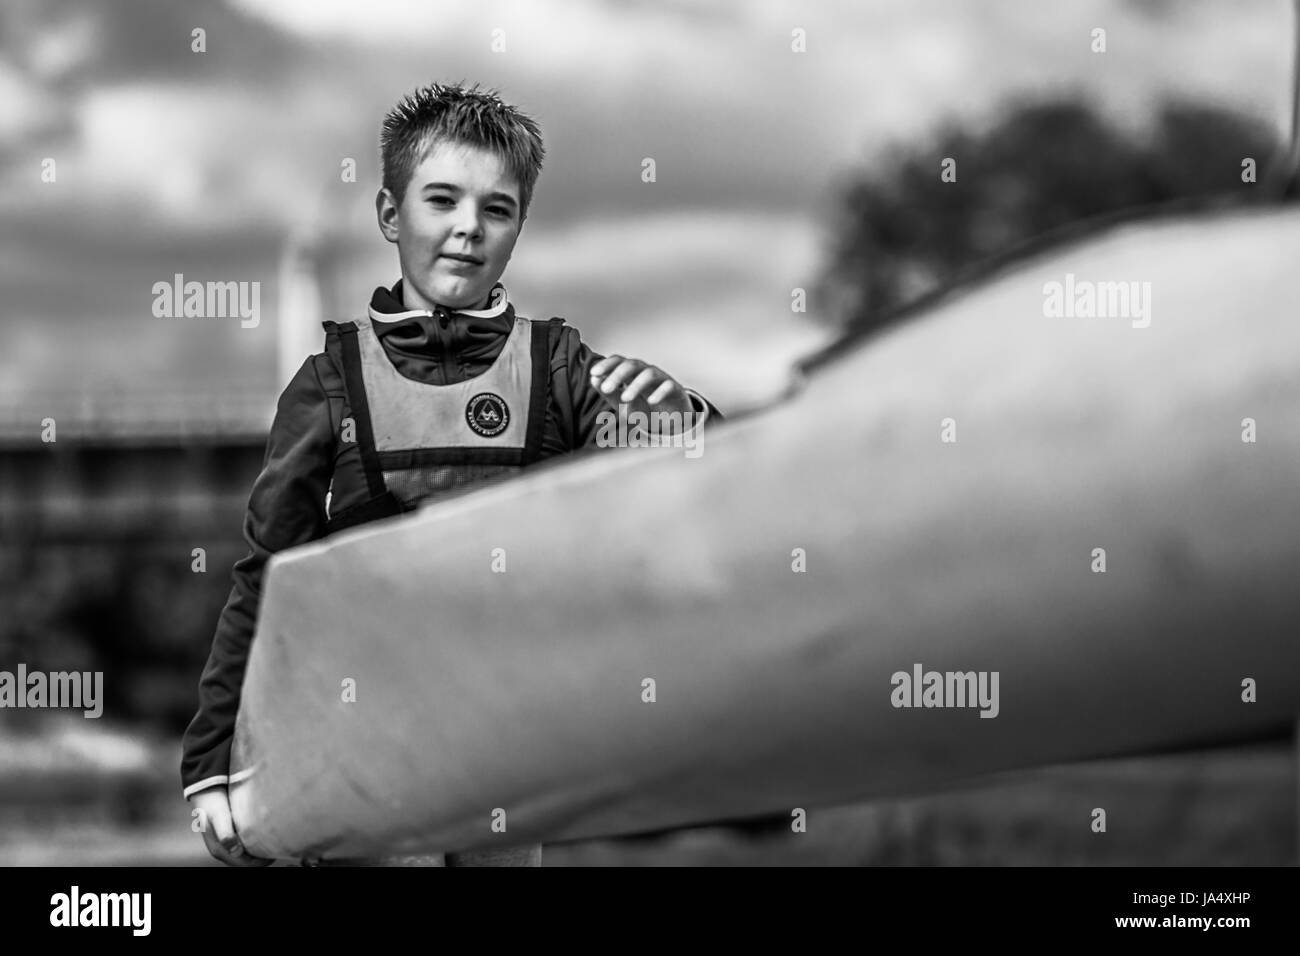 Ein Junge in einem Folge-Club in Polen. Harte Arbeit in einem Sport-Formular im Rudern und Kanufahren. Sportliche Teenager. Stockfoto